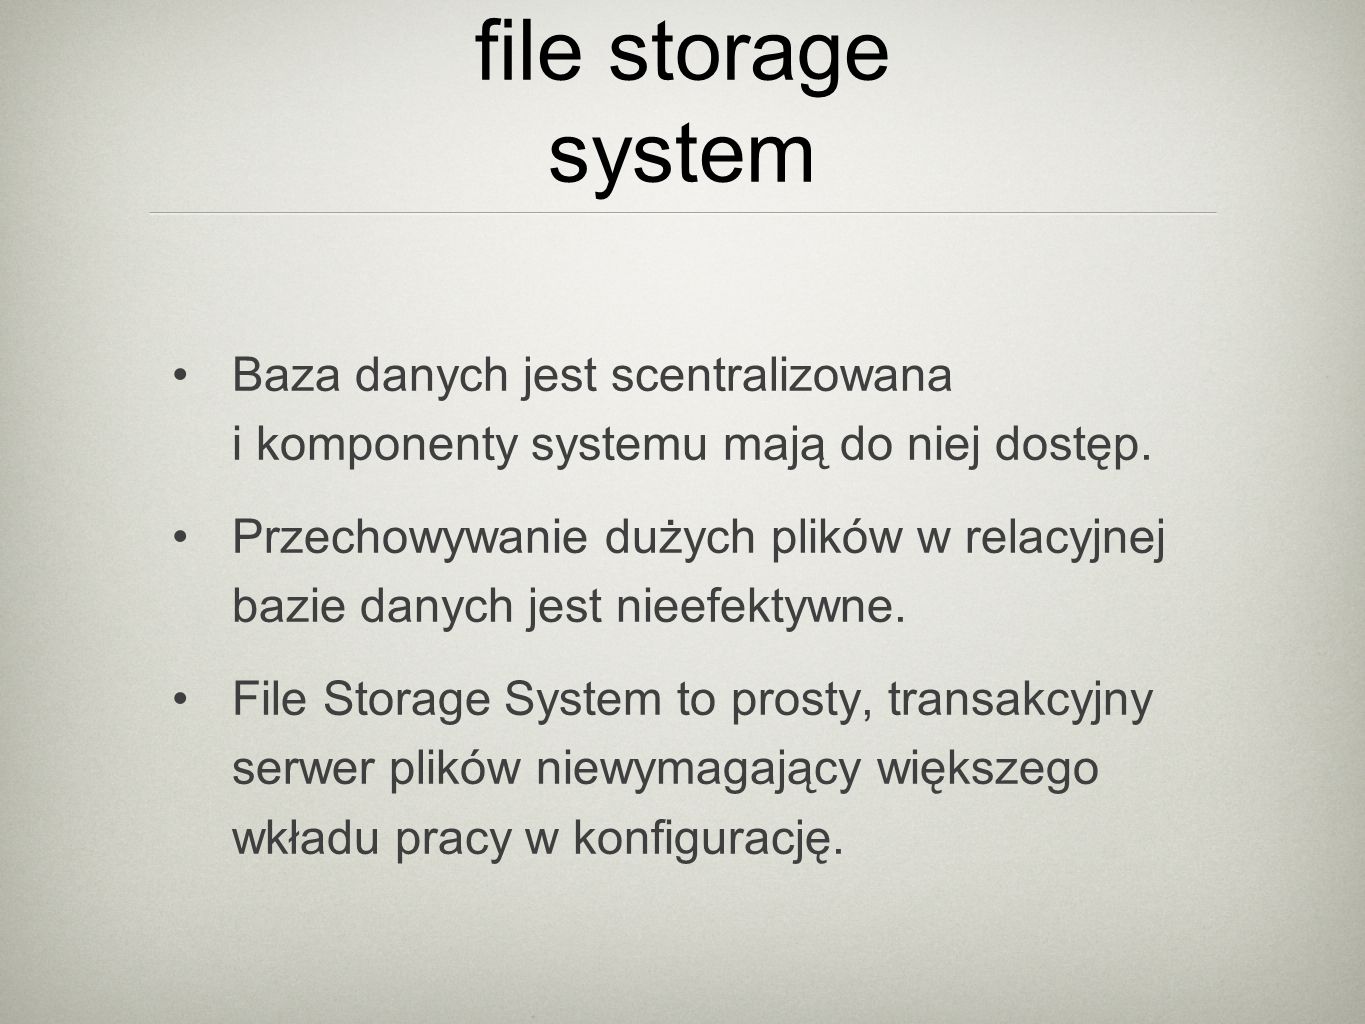 file storage system Baza danych jest scentralizowana i komponenty systemu mają do niej dostęp.